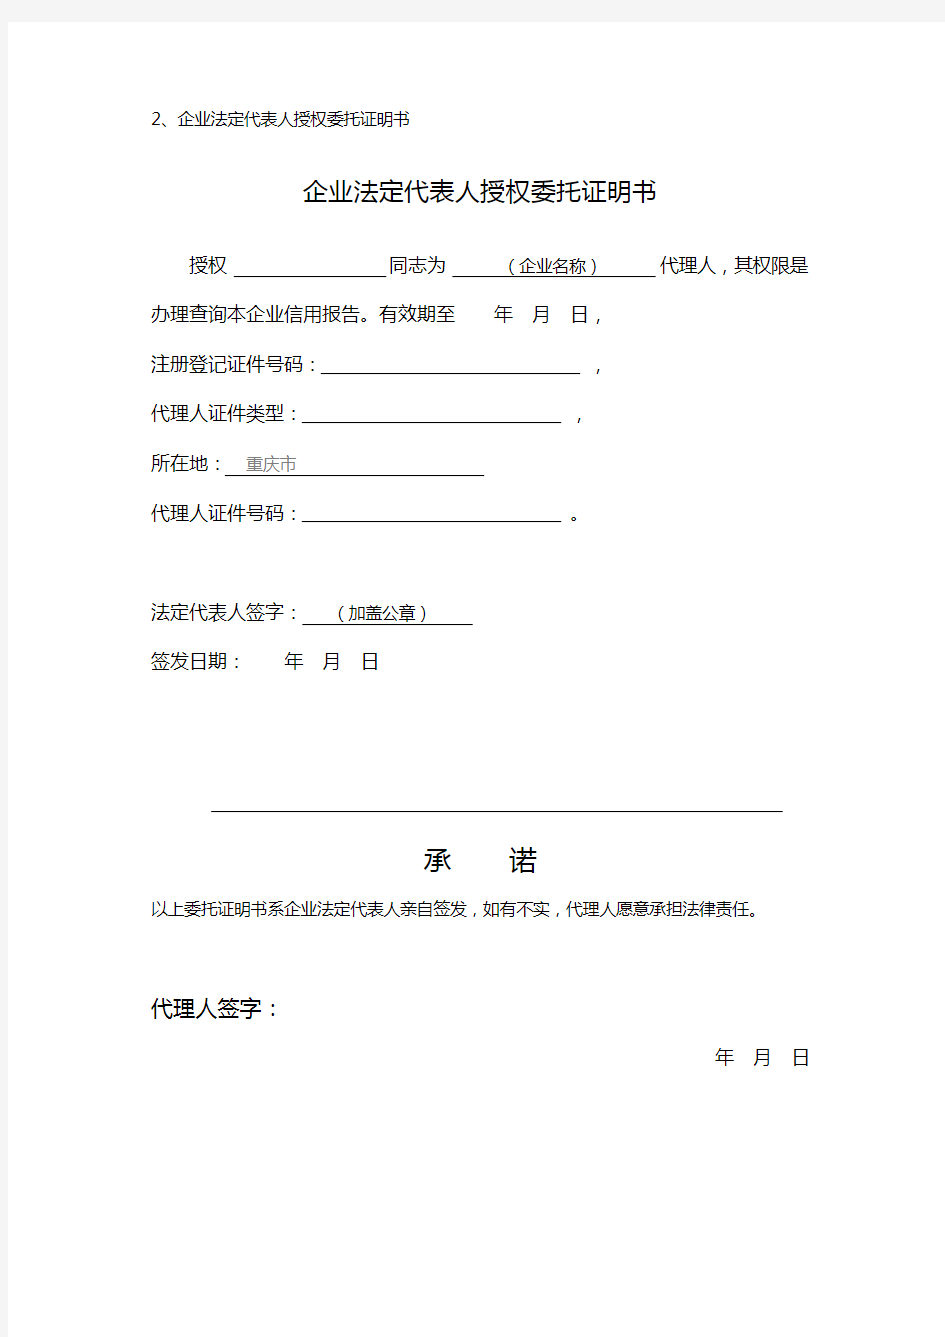 重庆市企业信用信息查询报告